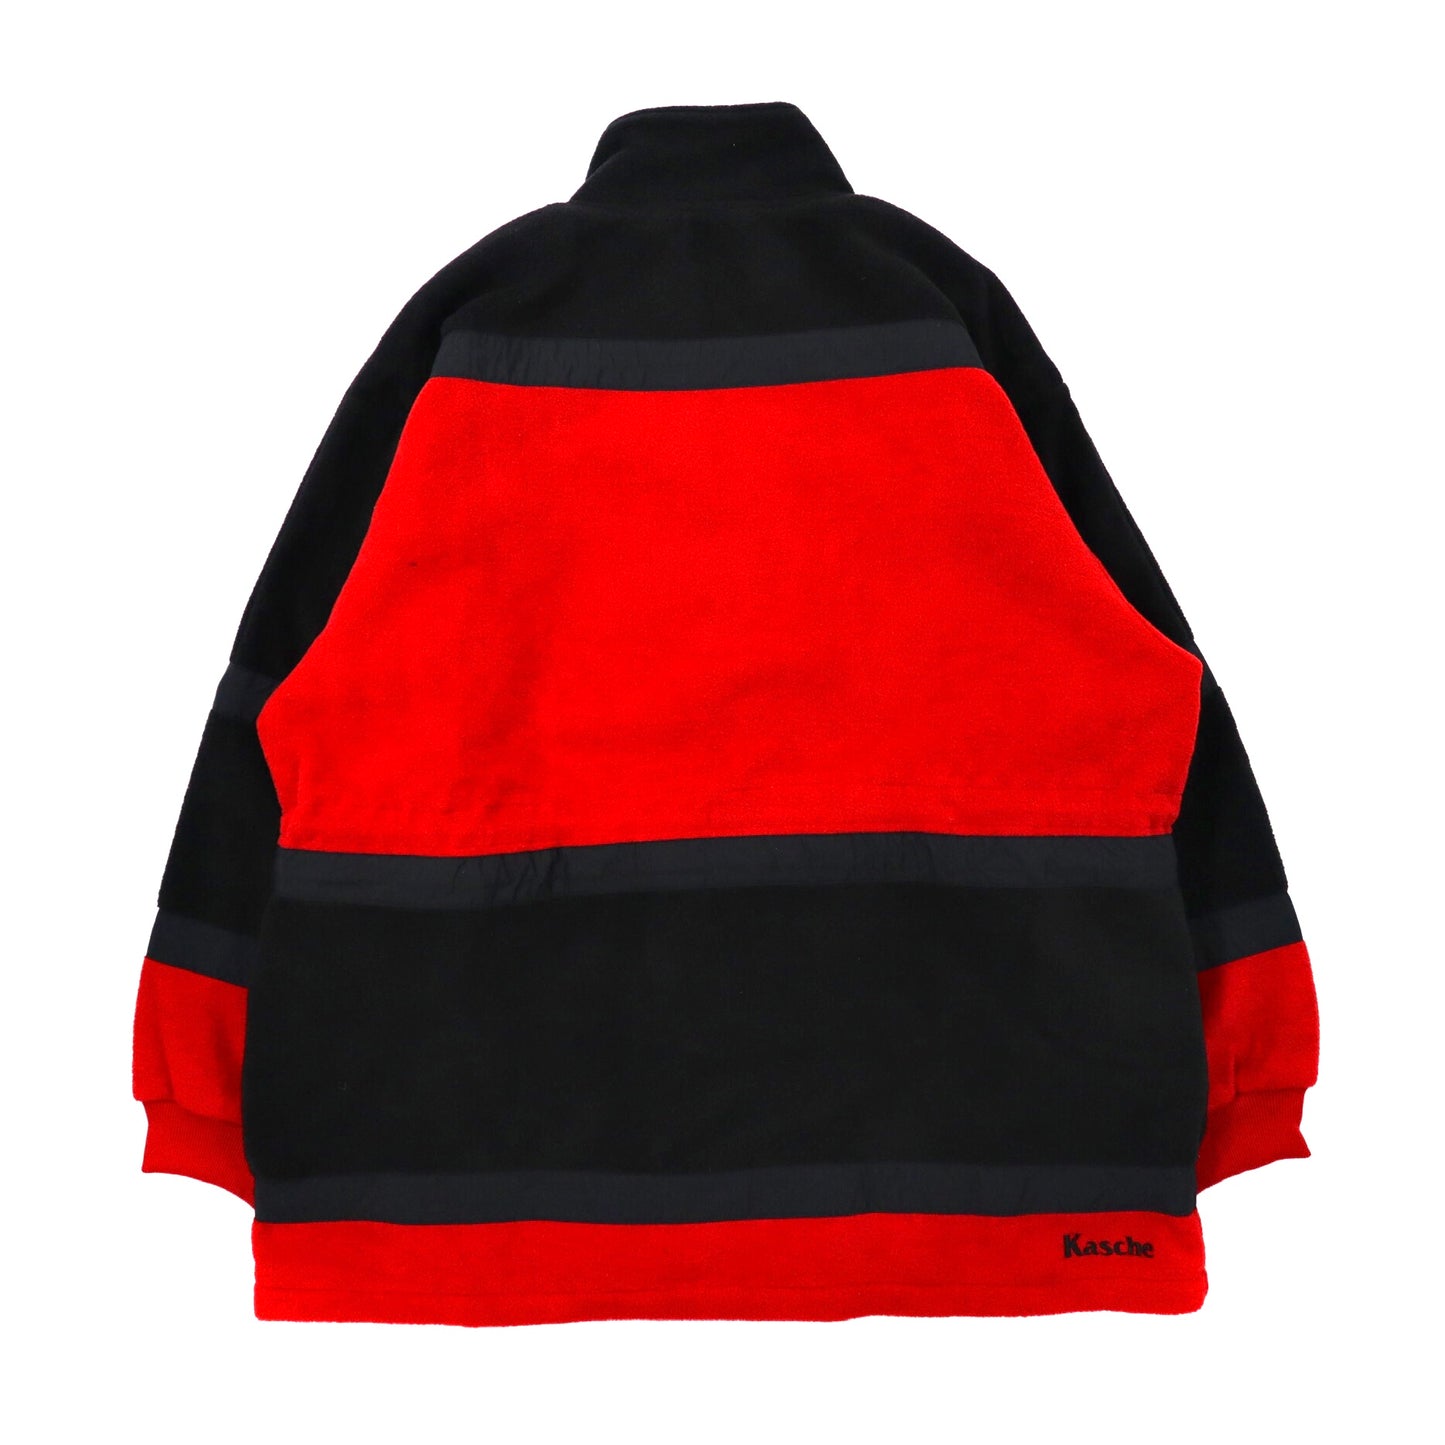 kasche ビッグサイズ フリースジャケット 2XL レッド ポリエステル ドロスト ロゴ刺繍 90年代 未使用品